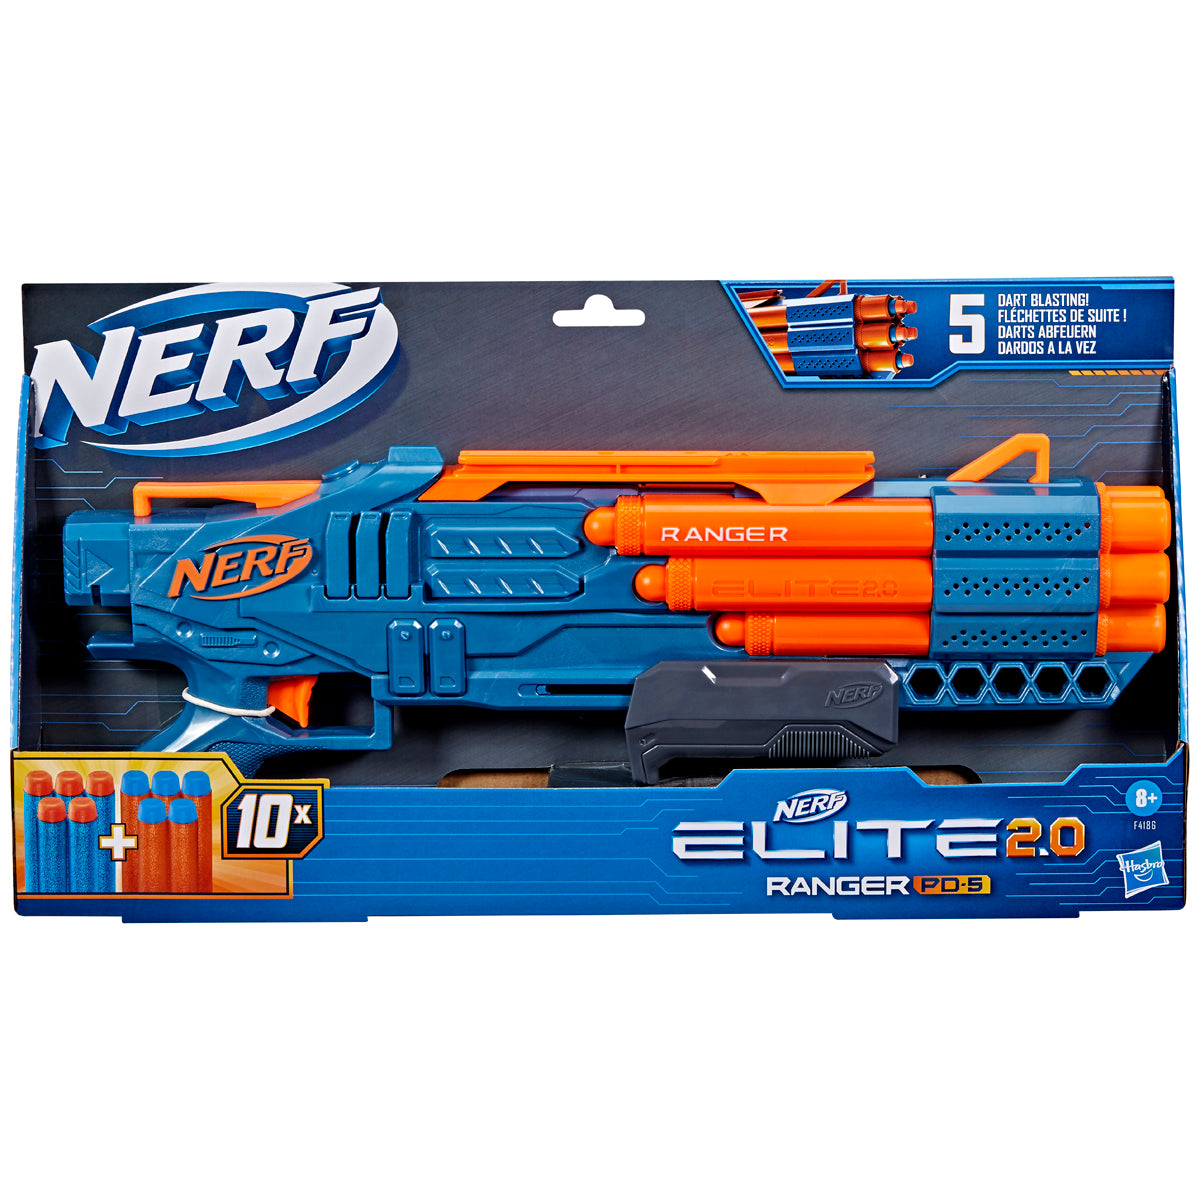 Nerf Elite 2.0 Ranger PD-5 Blaster with 10 Nerf Elite Darts